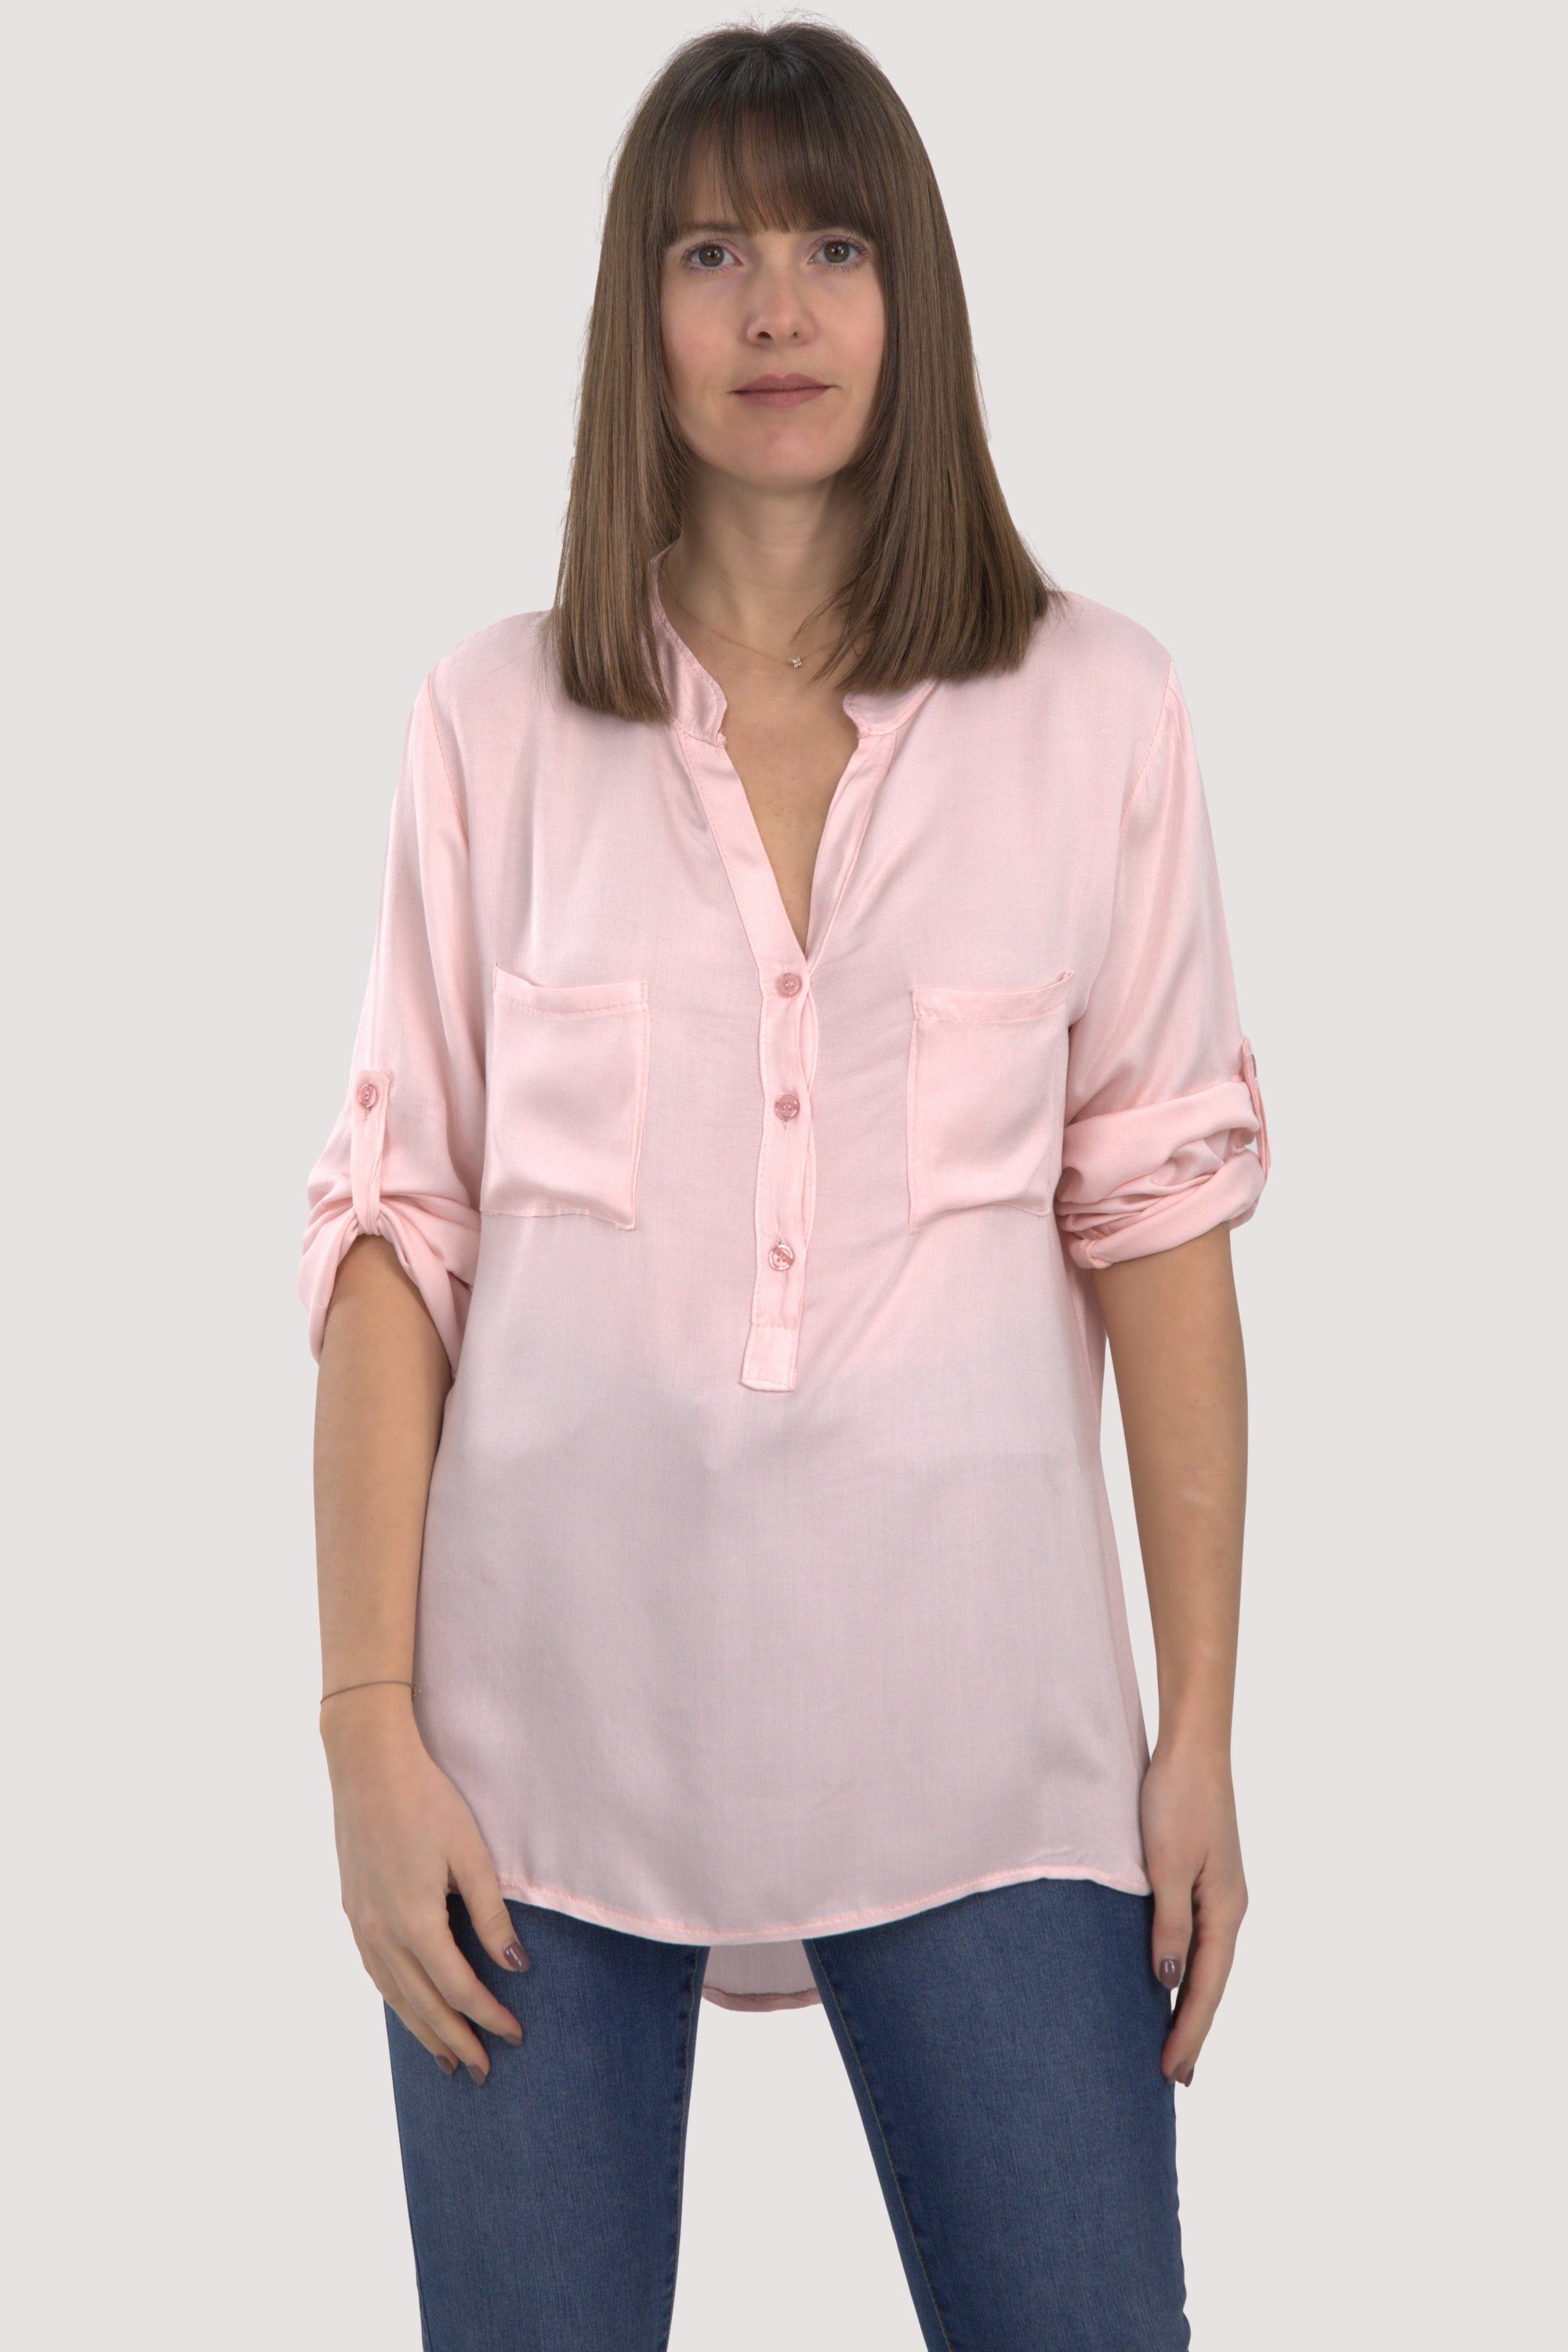 malito more than fashion Schlupfbluse 9015 Bluse mit krempelbaren 3/4 Ärmeln Einheitsgröße rosa